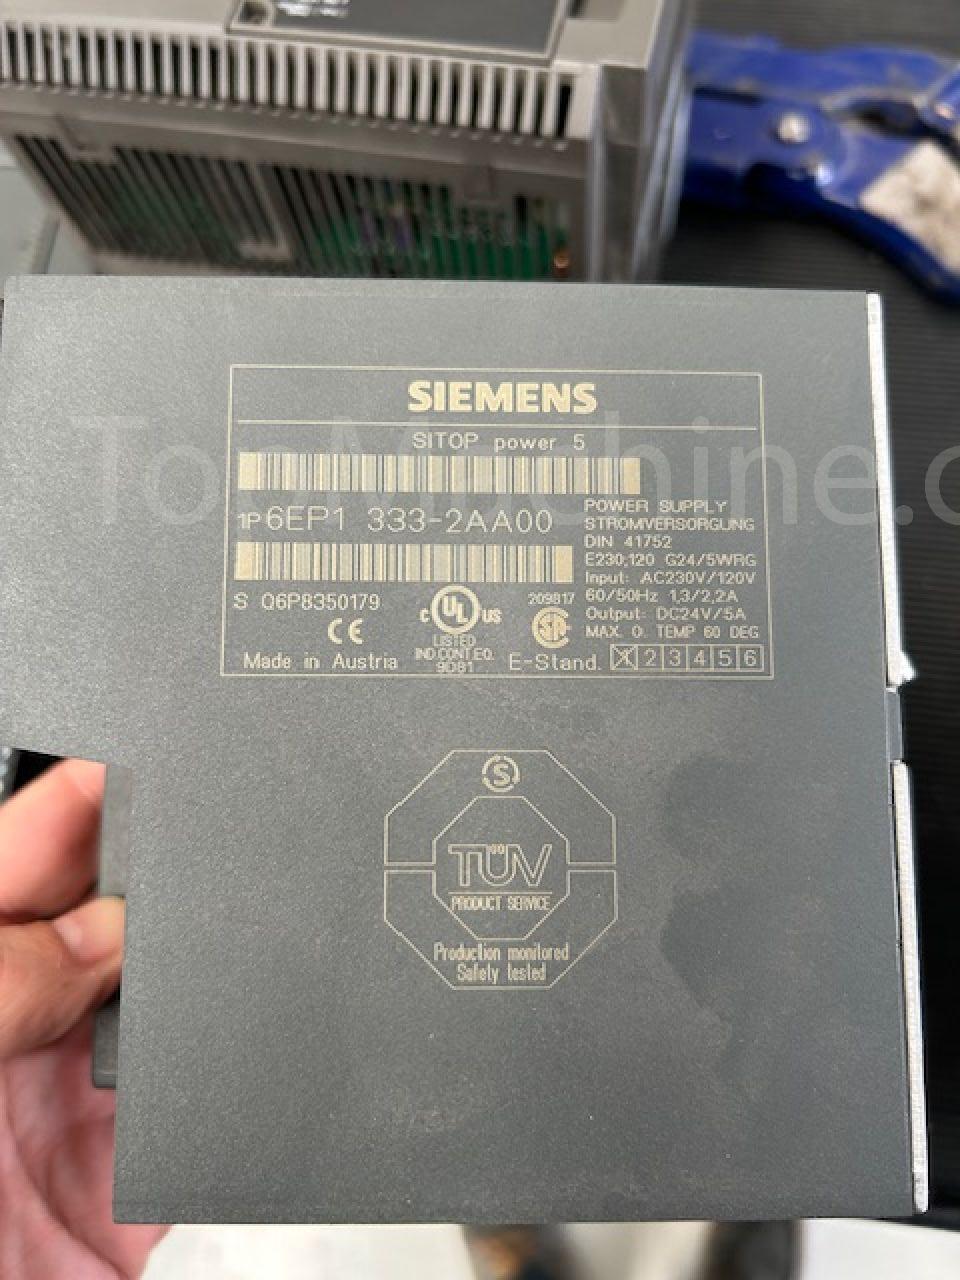 Used Siemens Sitop Power 5 Ersatzteile Elektrisch